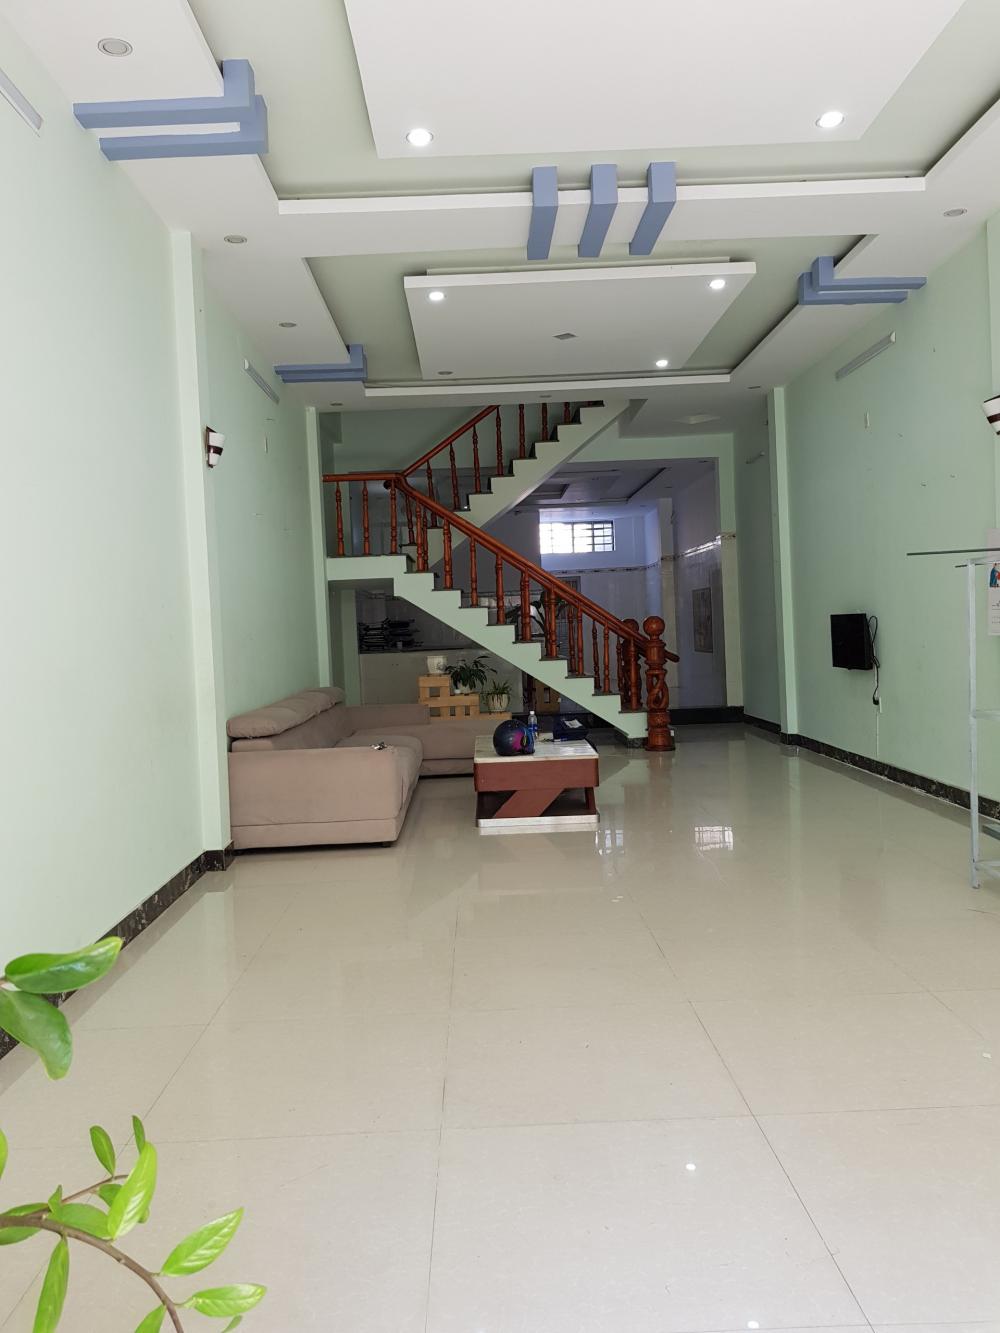 Bán nhanh nhà 3 tầng mới đẹp đường Lâm Nhĩ, Hòa Phát,gần Bến xe Đà Nẵng, 0906.53.53.98